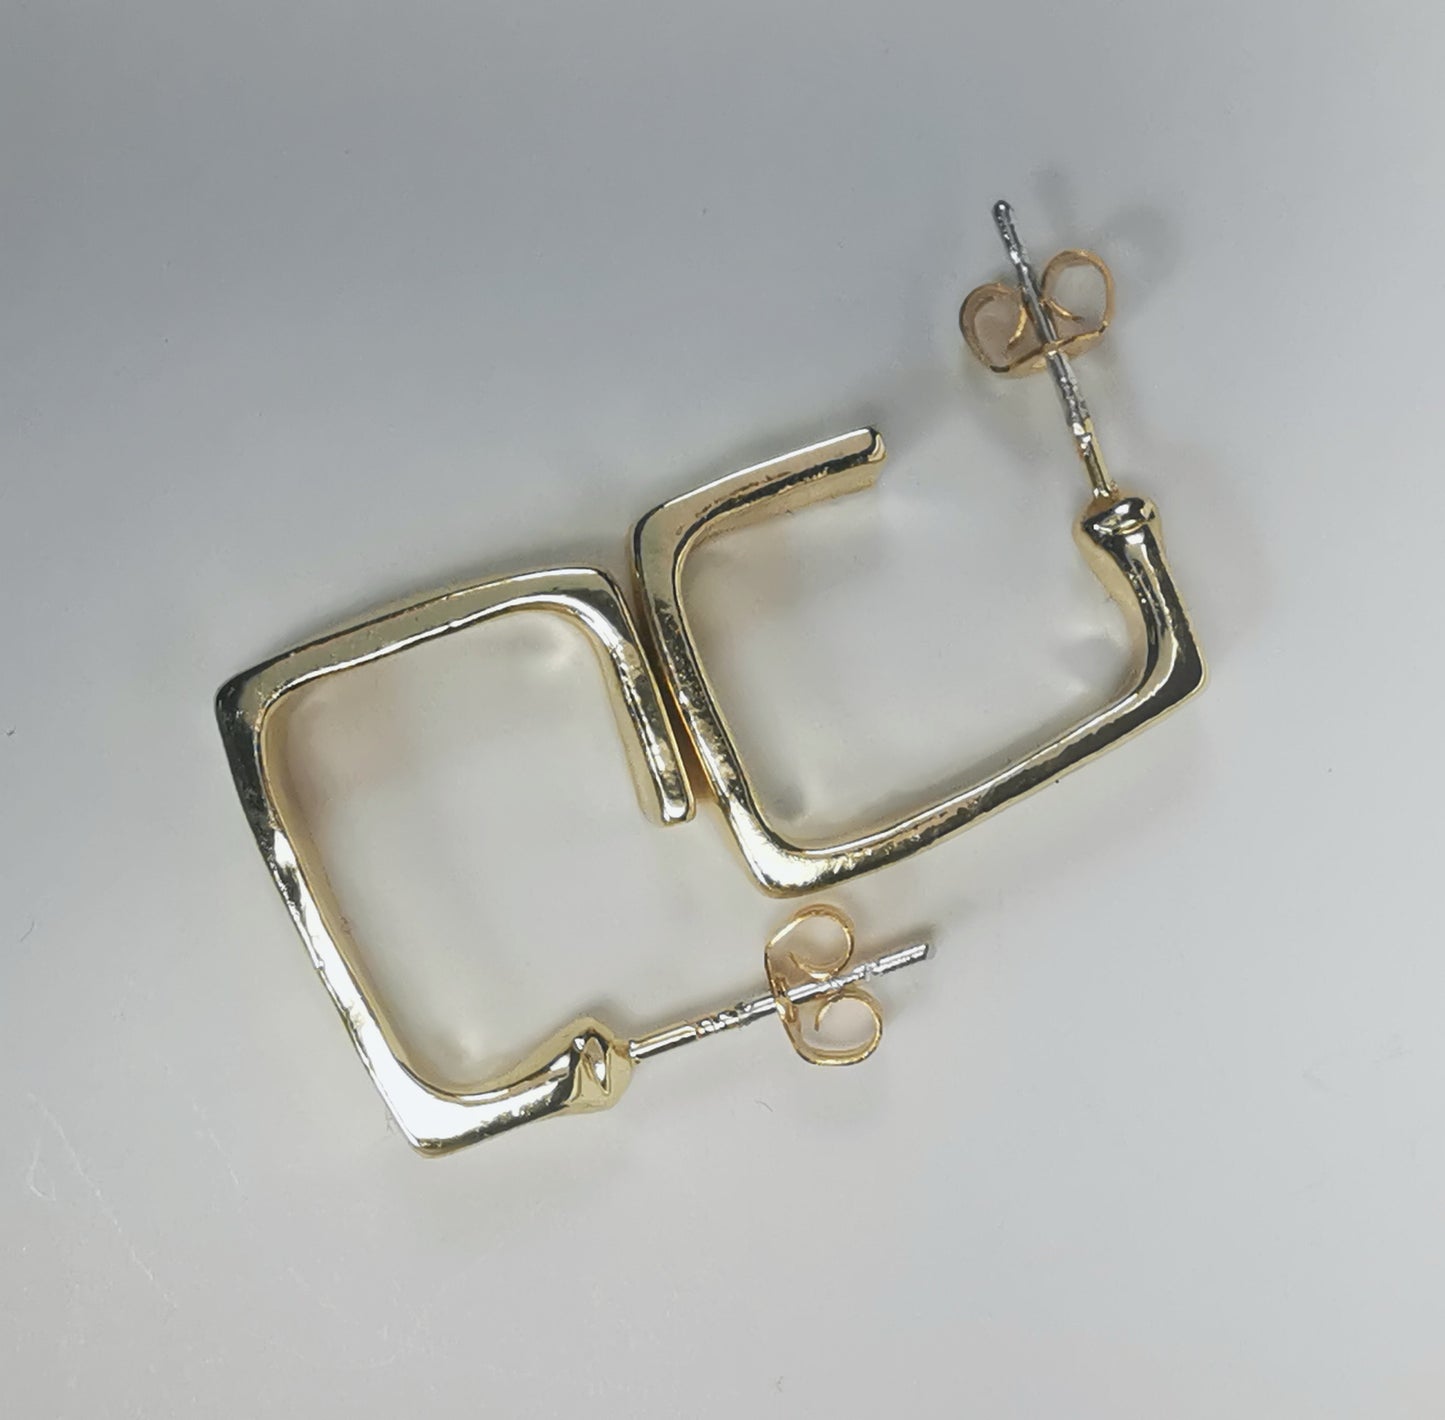 Boucles d'oreilles dorées, carrées, de 15mm de coté ,avec section rectangulaire, présentées posées sur fond blanc, cote à cote, la boucle droite décalée de 90 degrés. Vue de dessus.